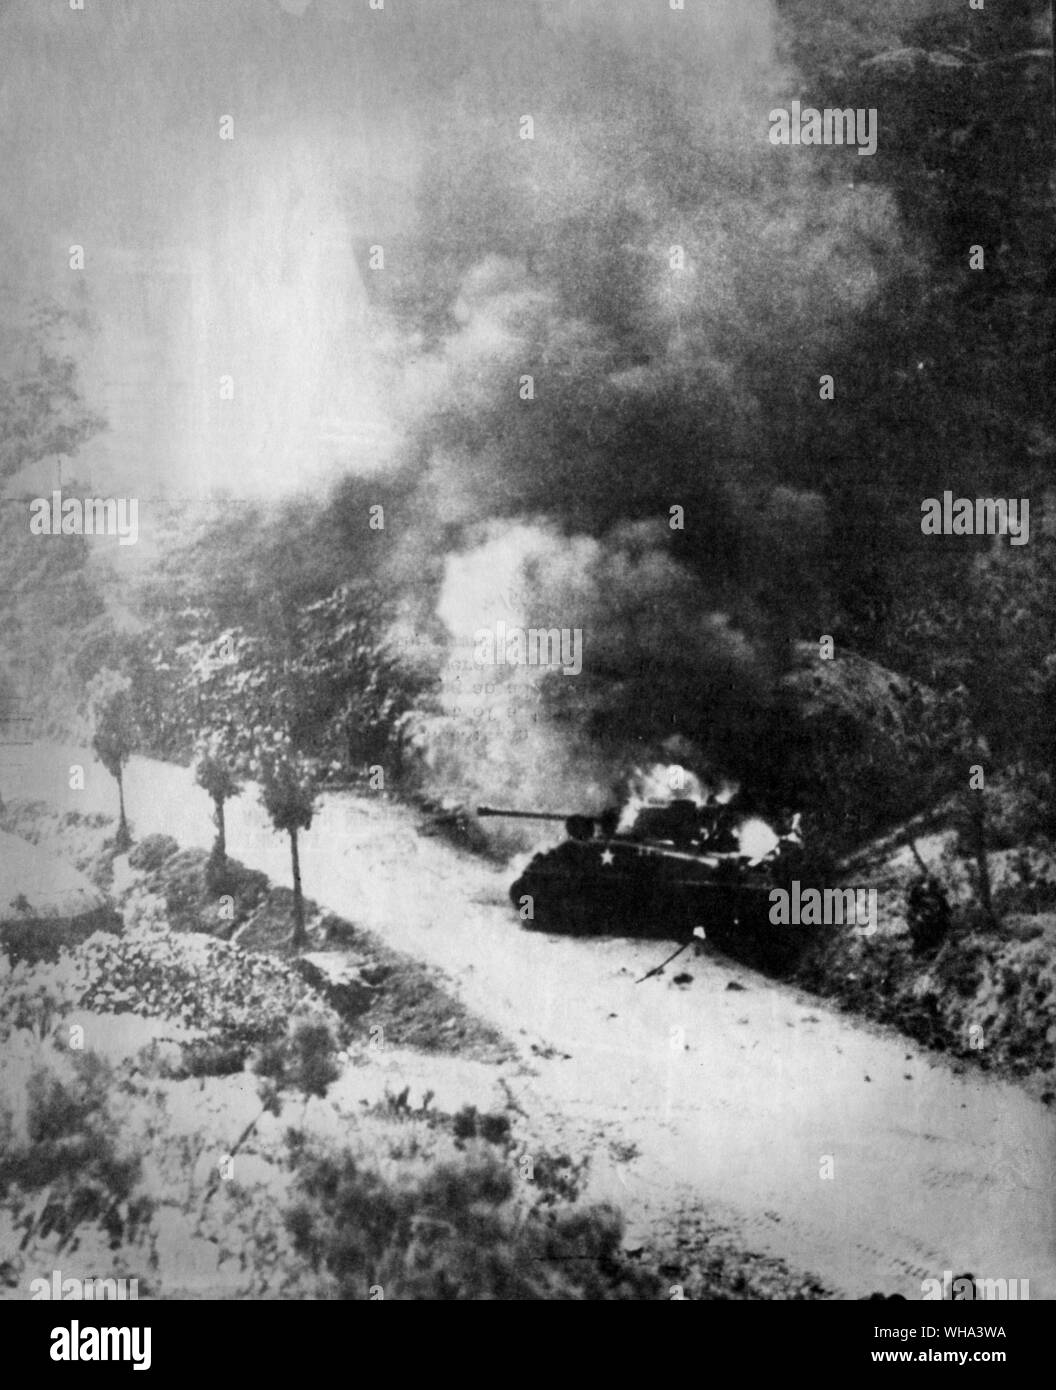 29. August 1950: Koreakrieg. Ein amerikanisches Medium tank Flammen nach dem Ausschalen Teil einer Daisy-chain Kette' von anti-tank mines Wenn für eine Vorauszahlung auf Chindong. Mitglieder der Tank crew wurden verletzt, sondern schleppte sich klar vor der Munition auf dem Tank explodierte. Stockfoto